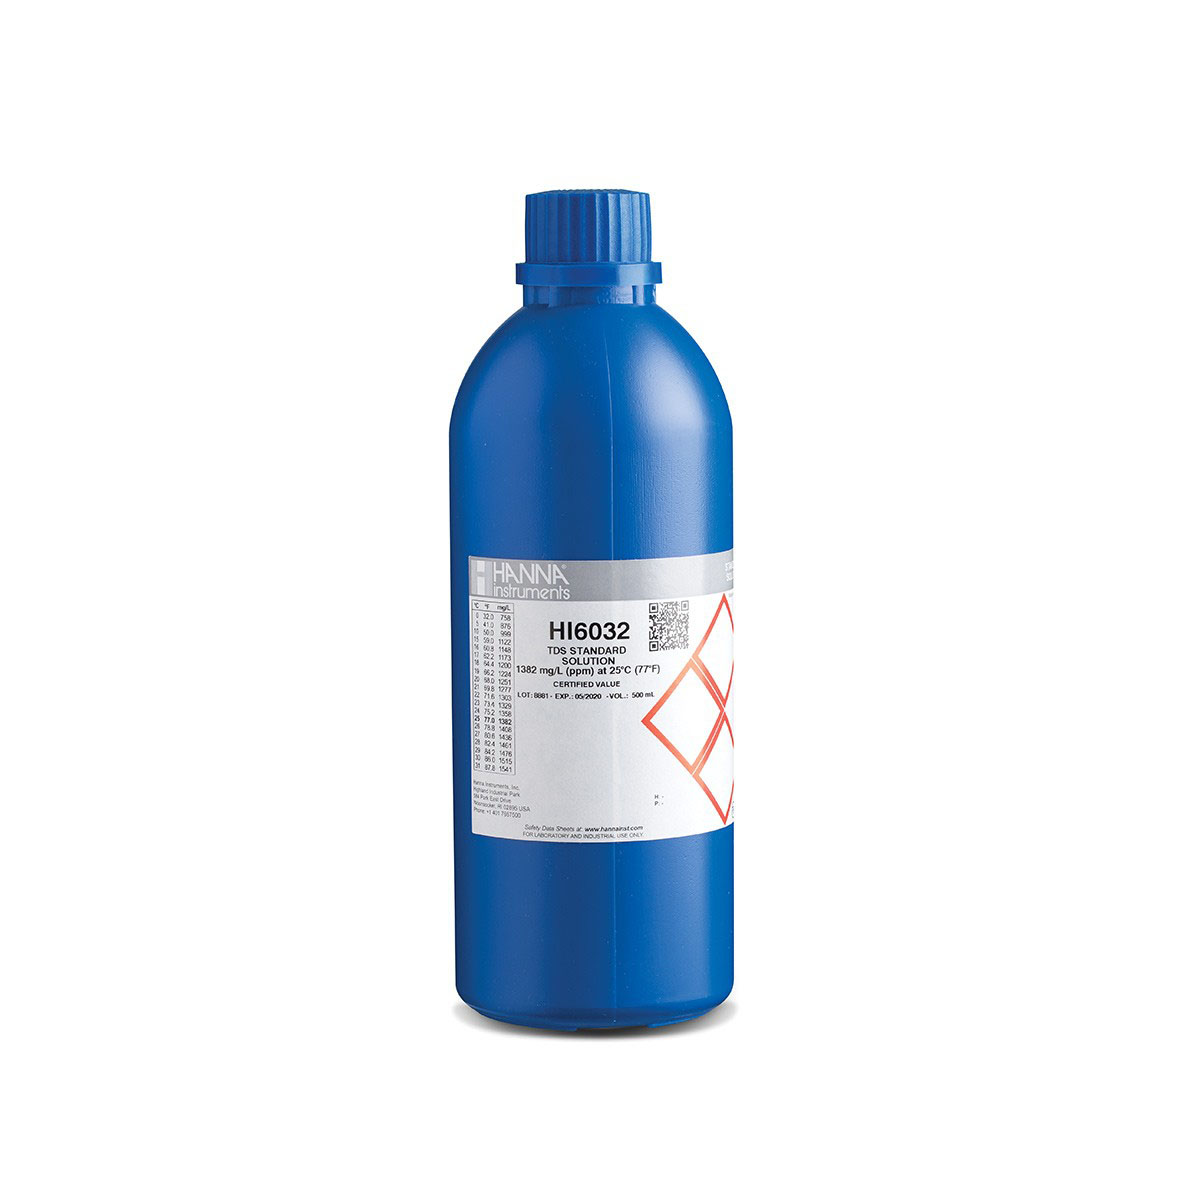 Kalibrierlösung TDS 1382 mg/L, Premiumqualität, 500mL-Flasche